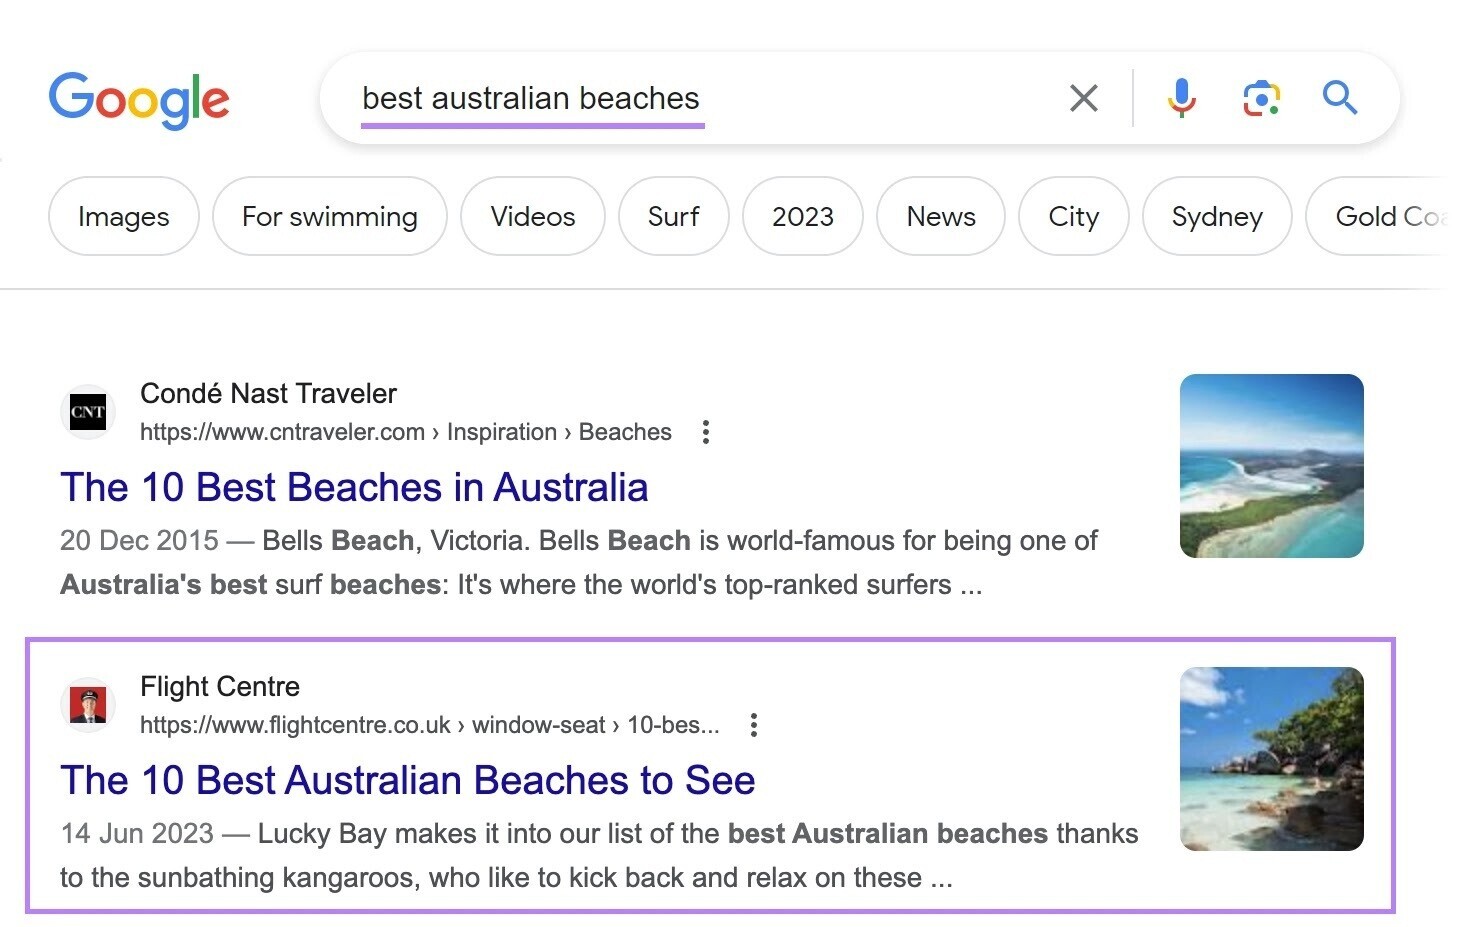 Google SERP for "best australian beaches" show a blog by Flight Centre